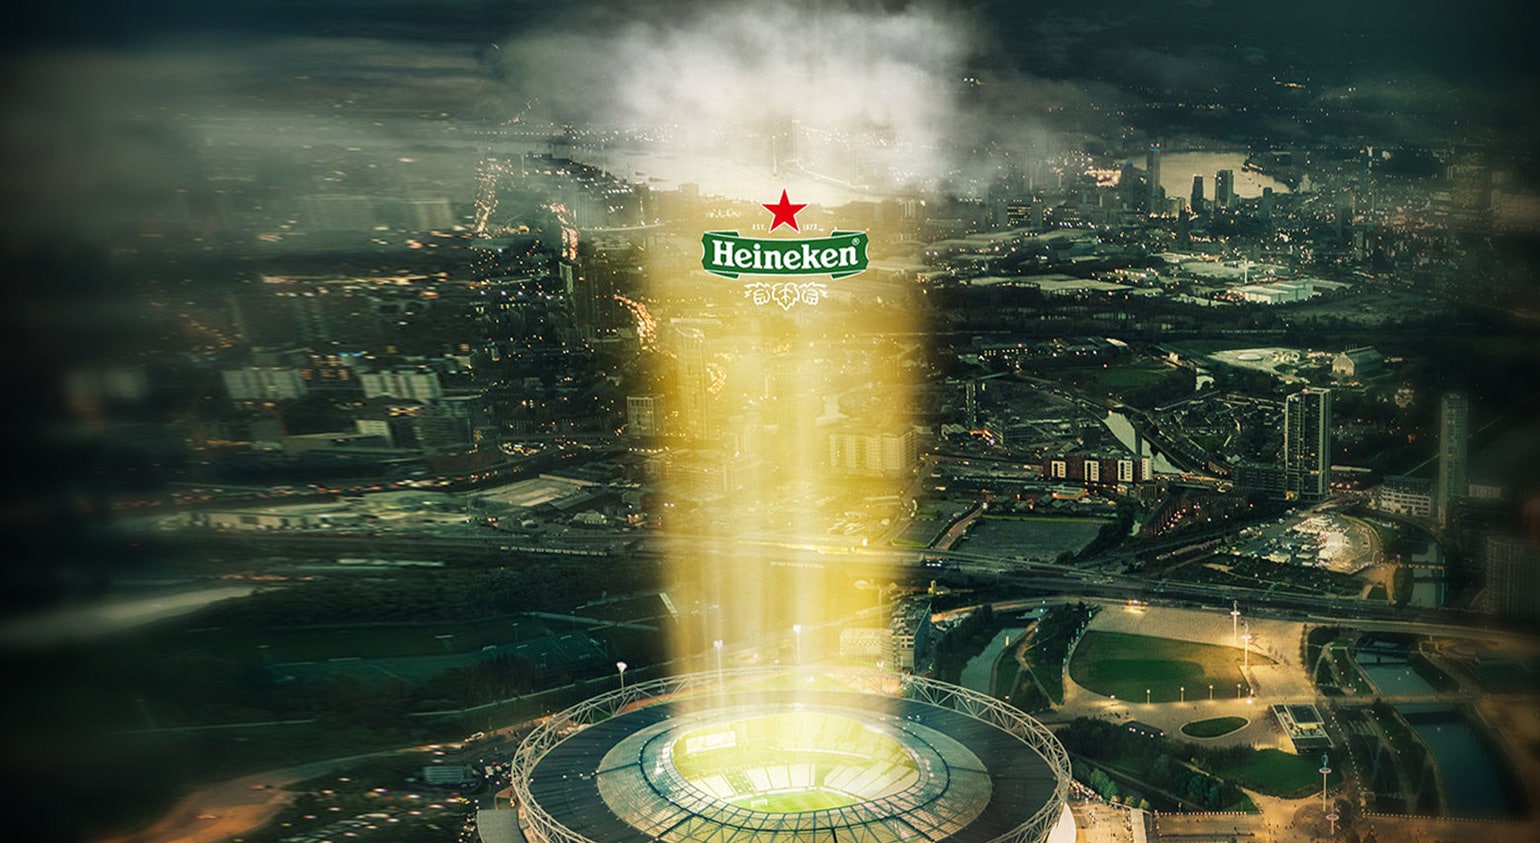 황혼의 도시 경관에 겹쳐진 Heineken 유리잔